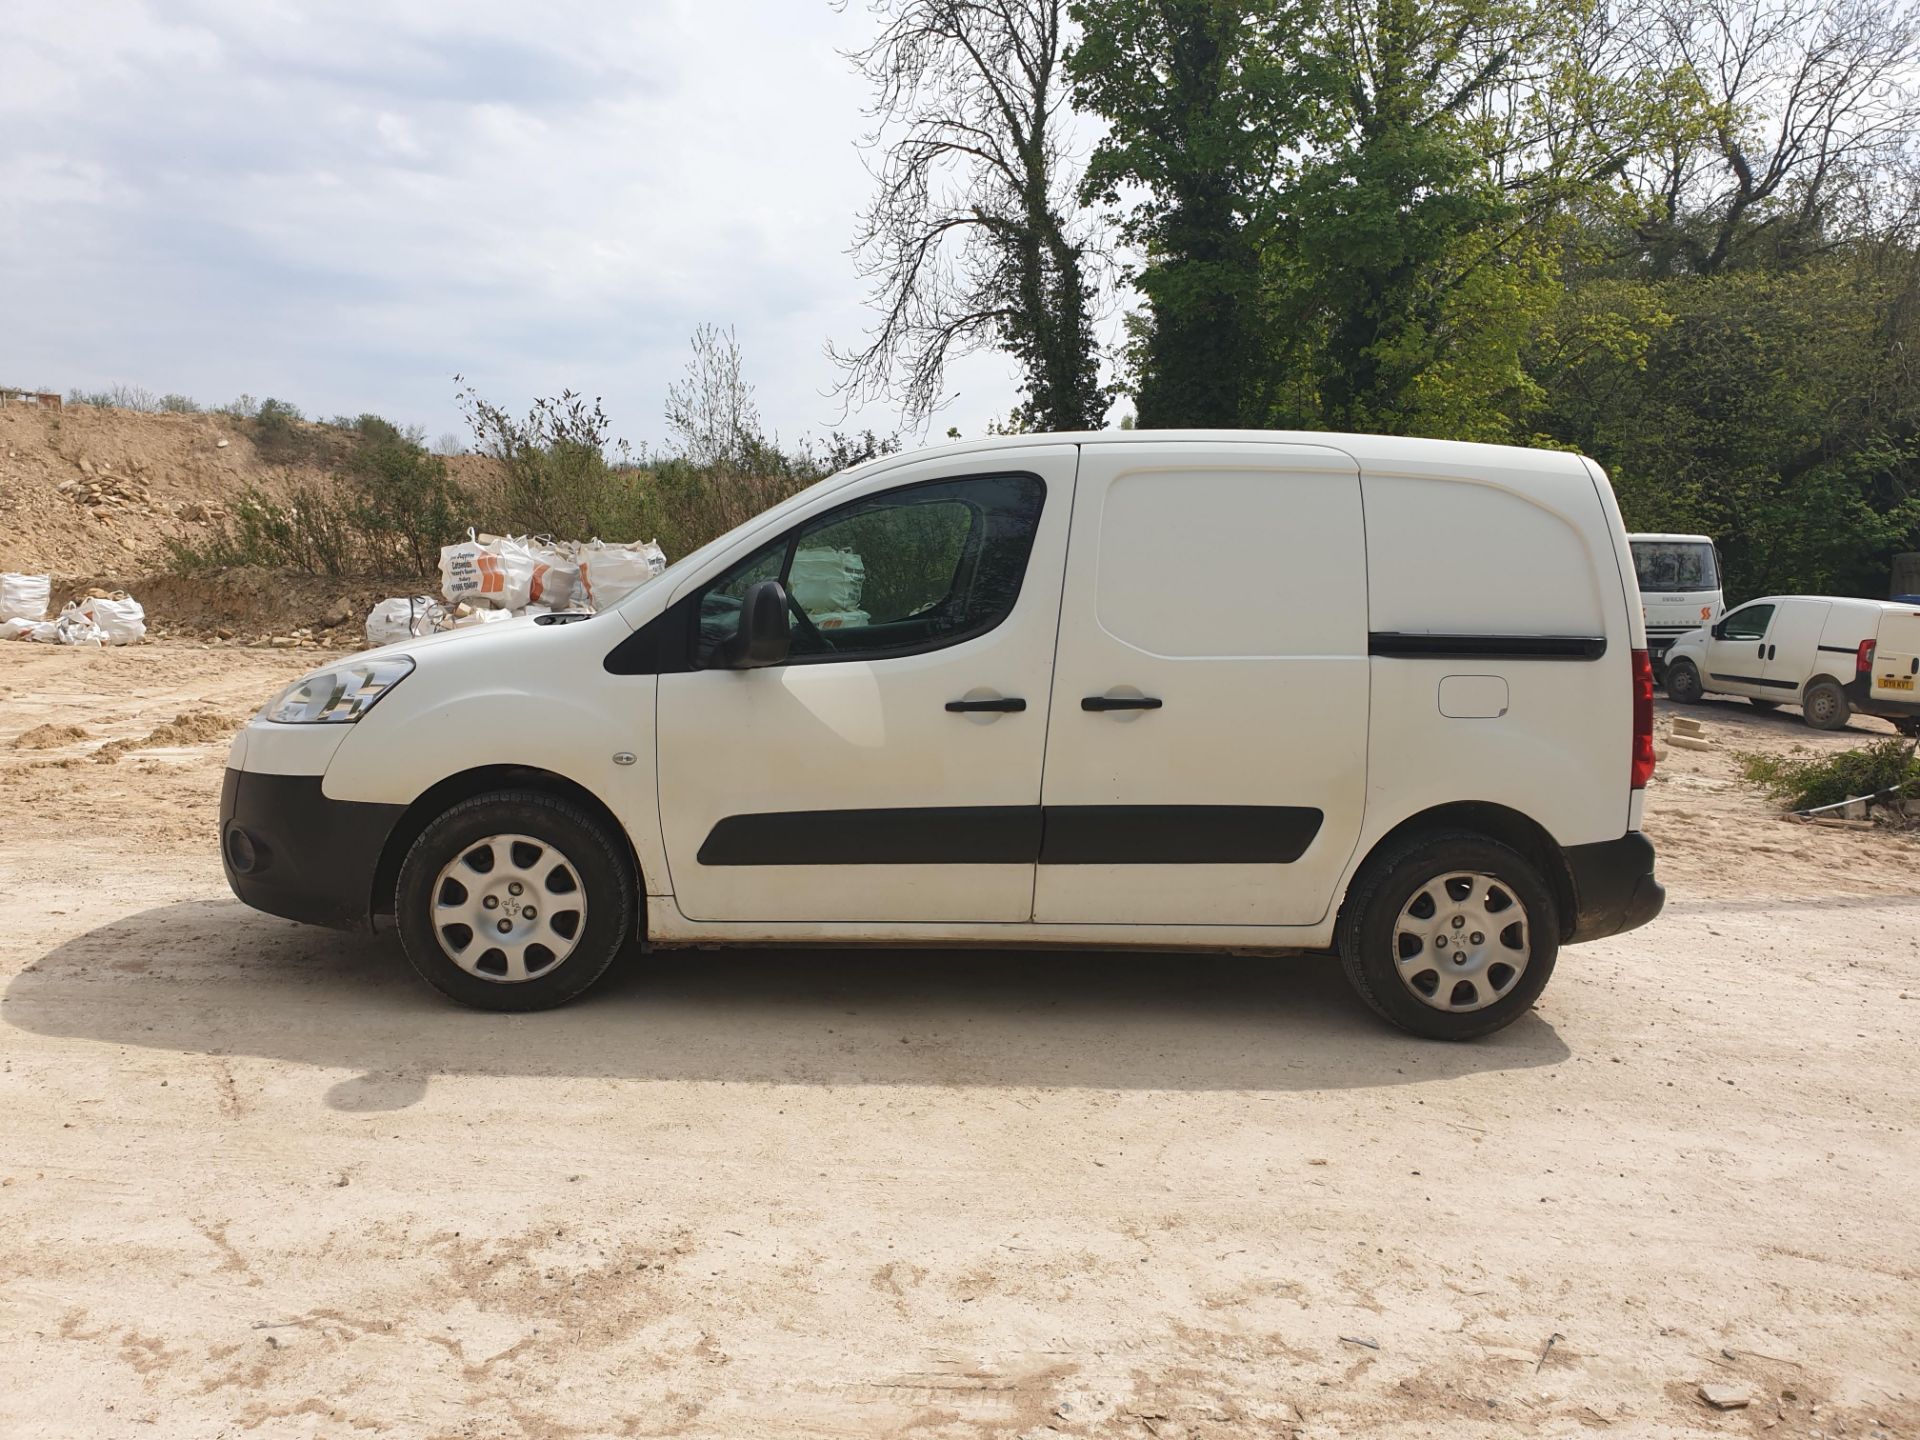 Peugeot Partner HDi SE L1 625 Van, registration YK - Image 3 of 7